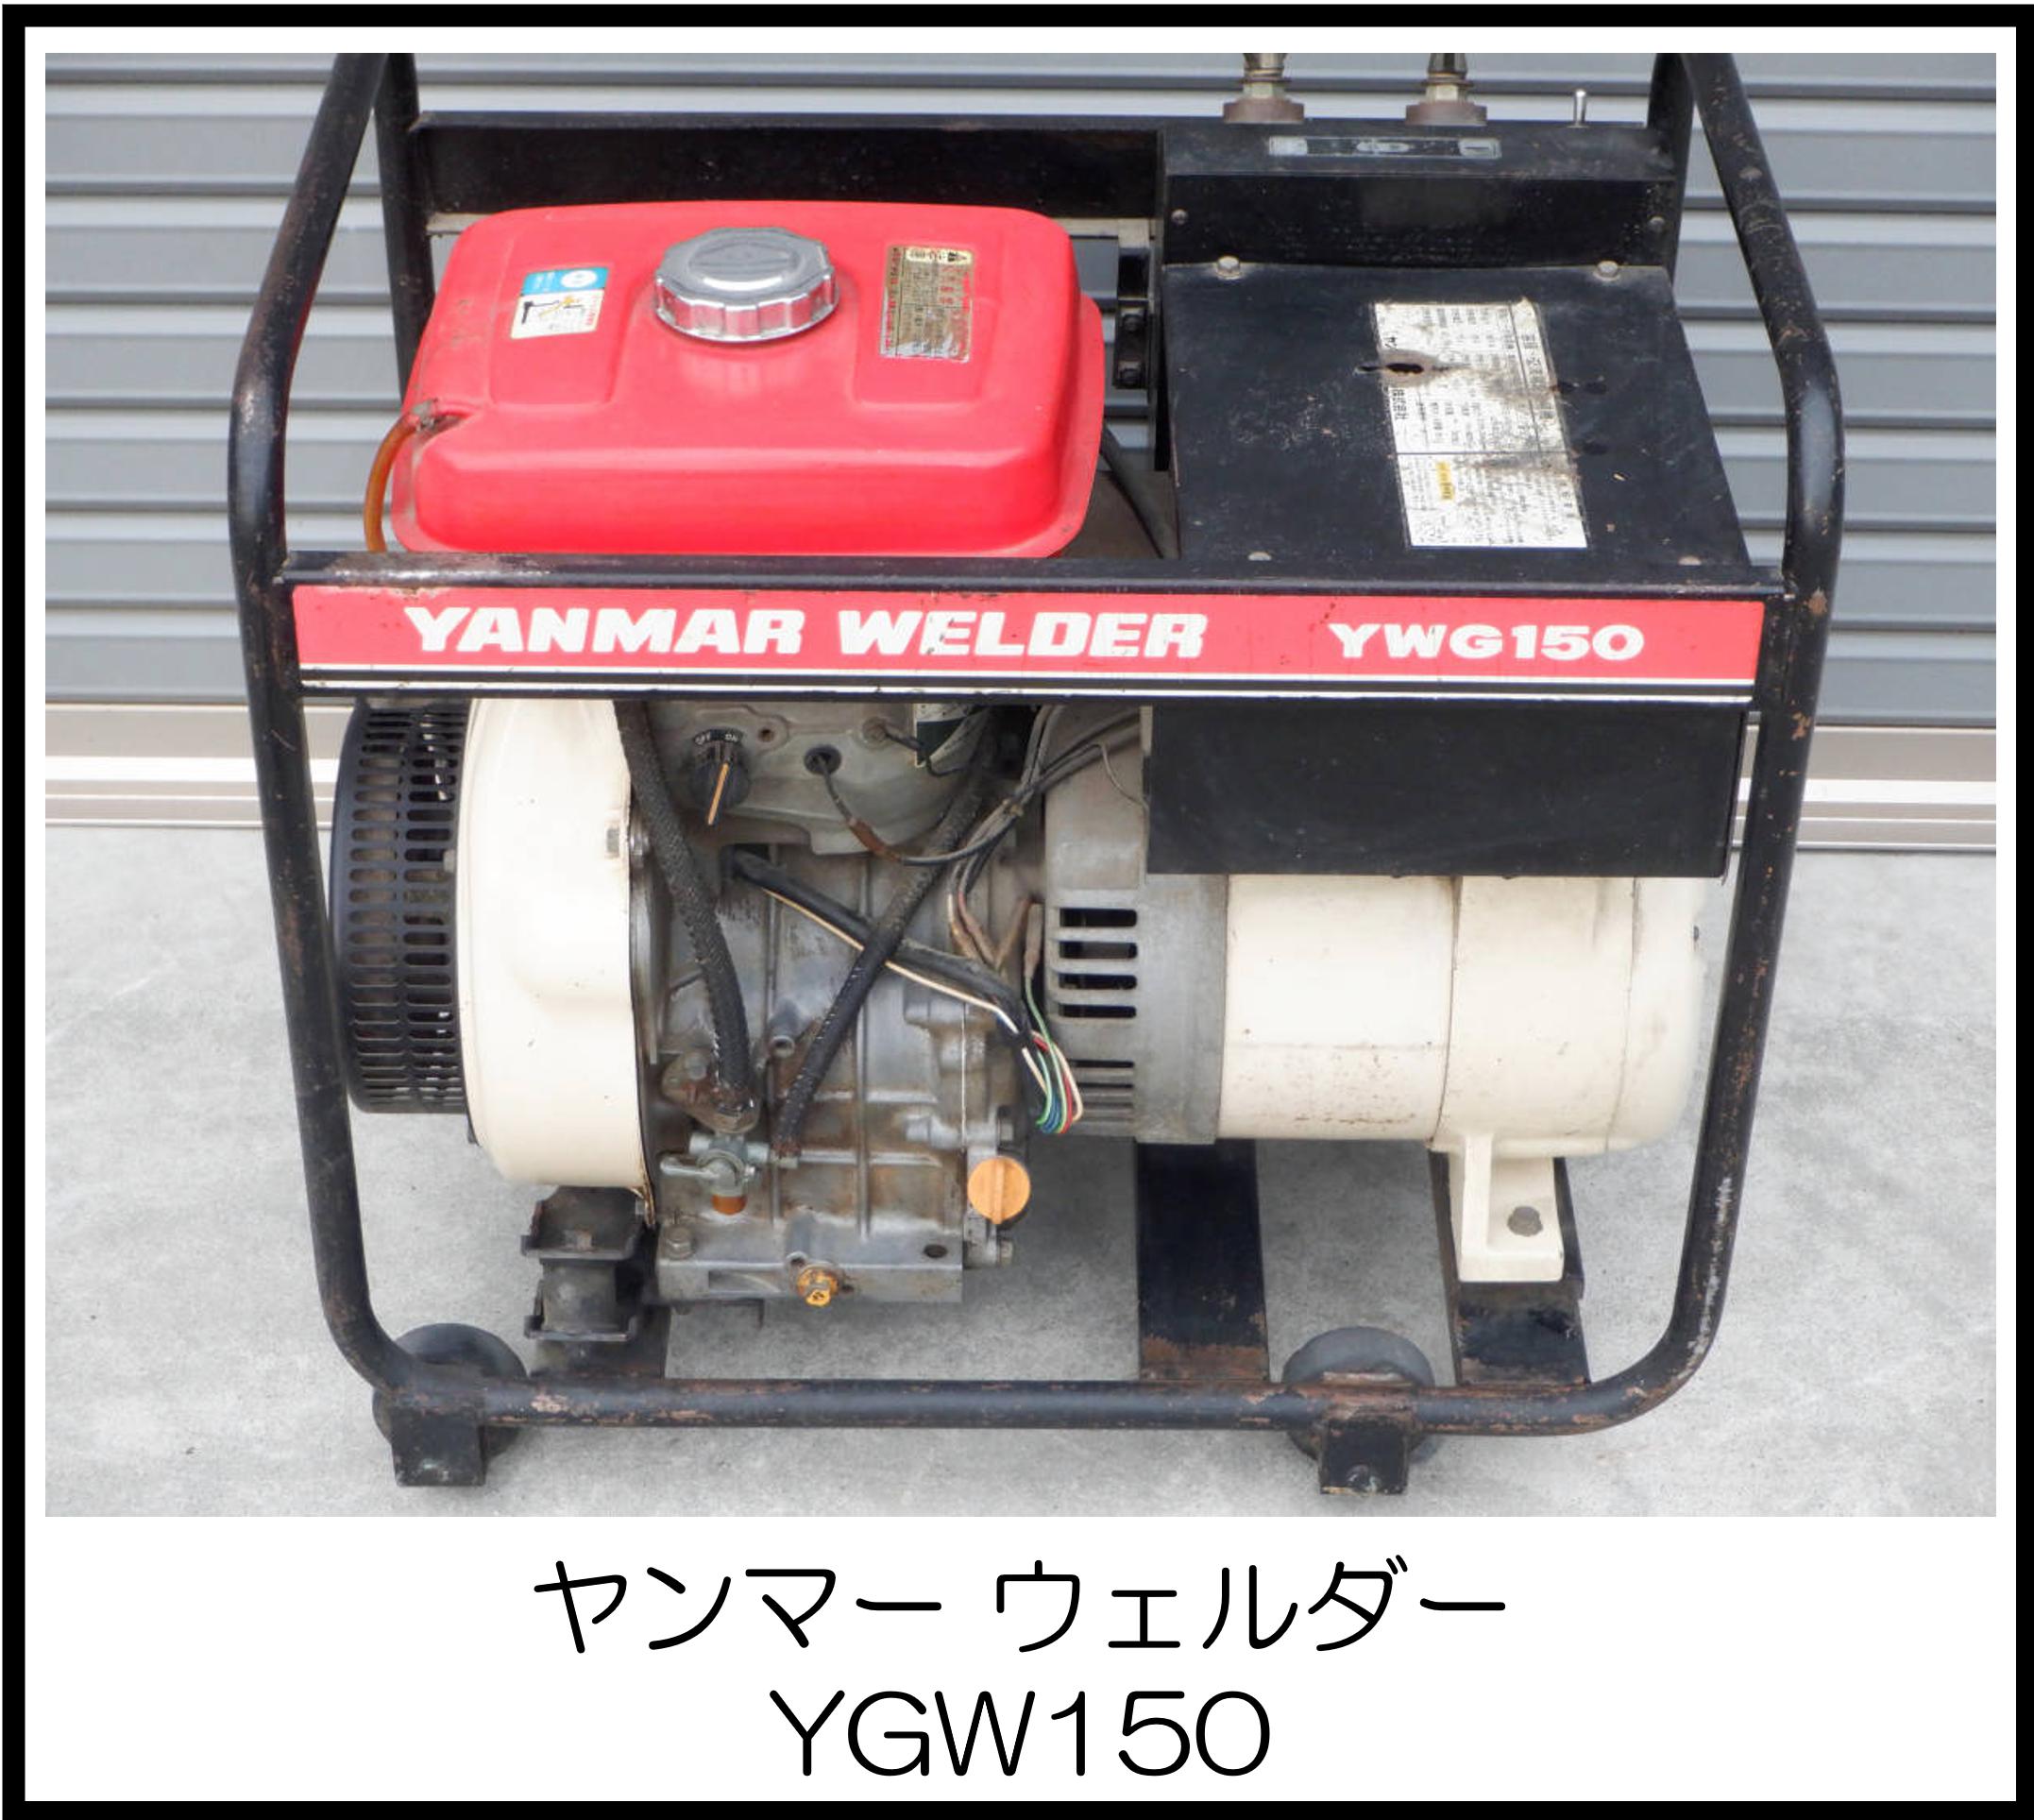 ヤンマー ウェルダー YGW150 大阪工具買取エスクライン